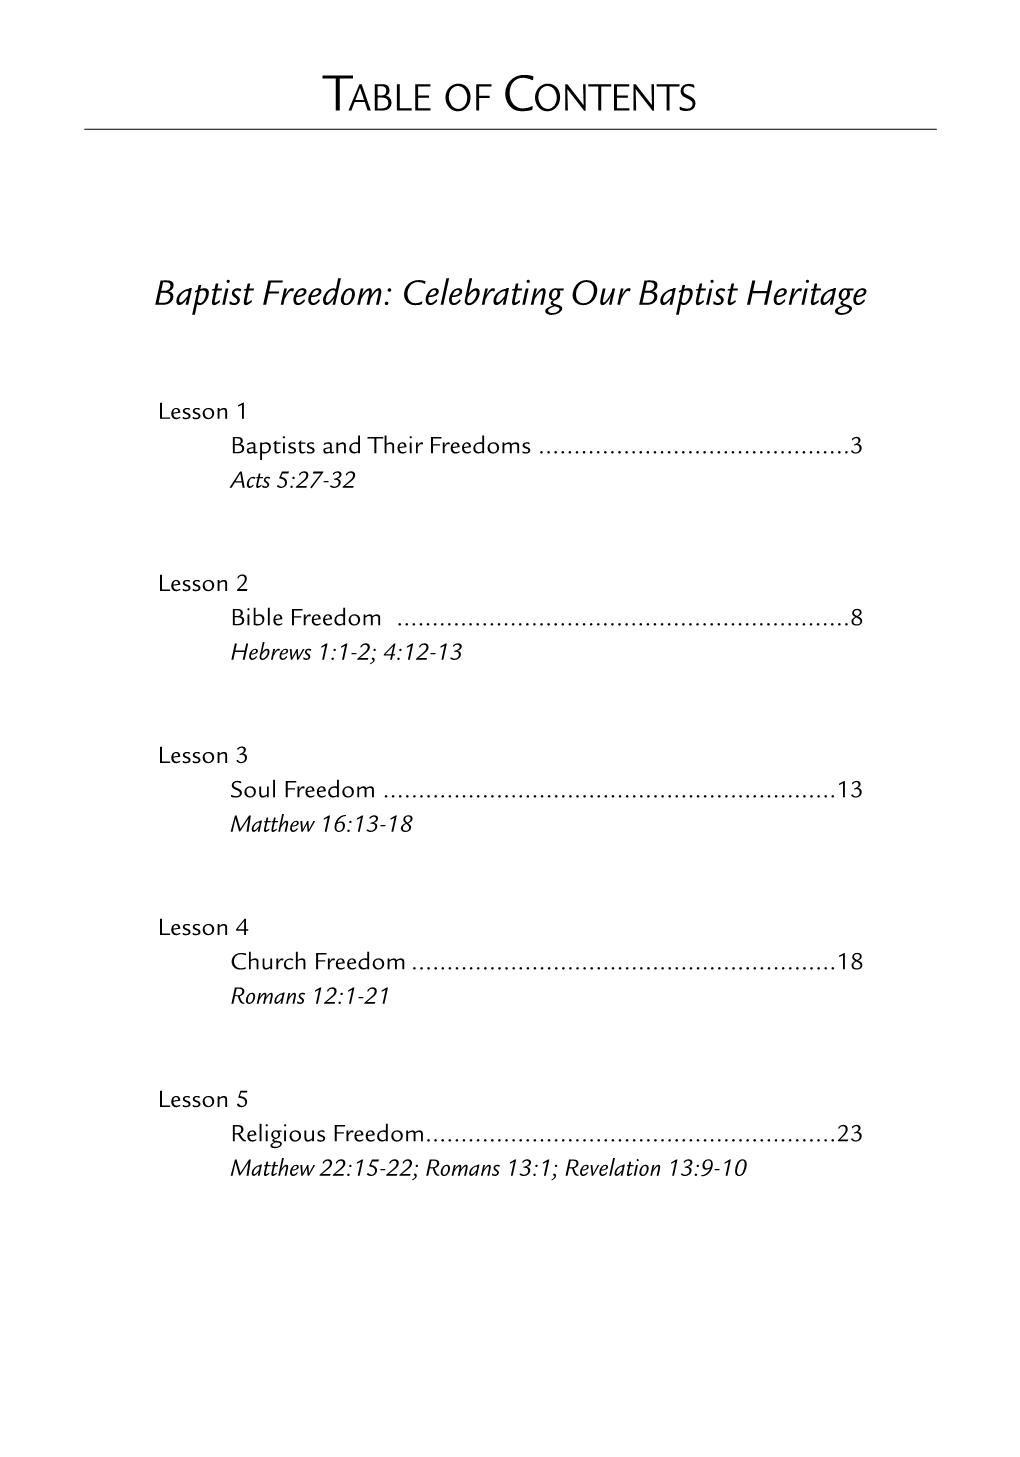 Baptist Freedom: Celebrating Our Baptist Heritage